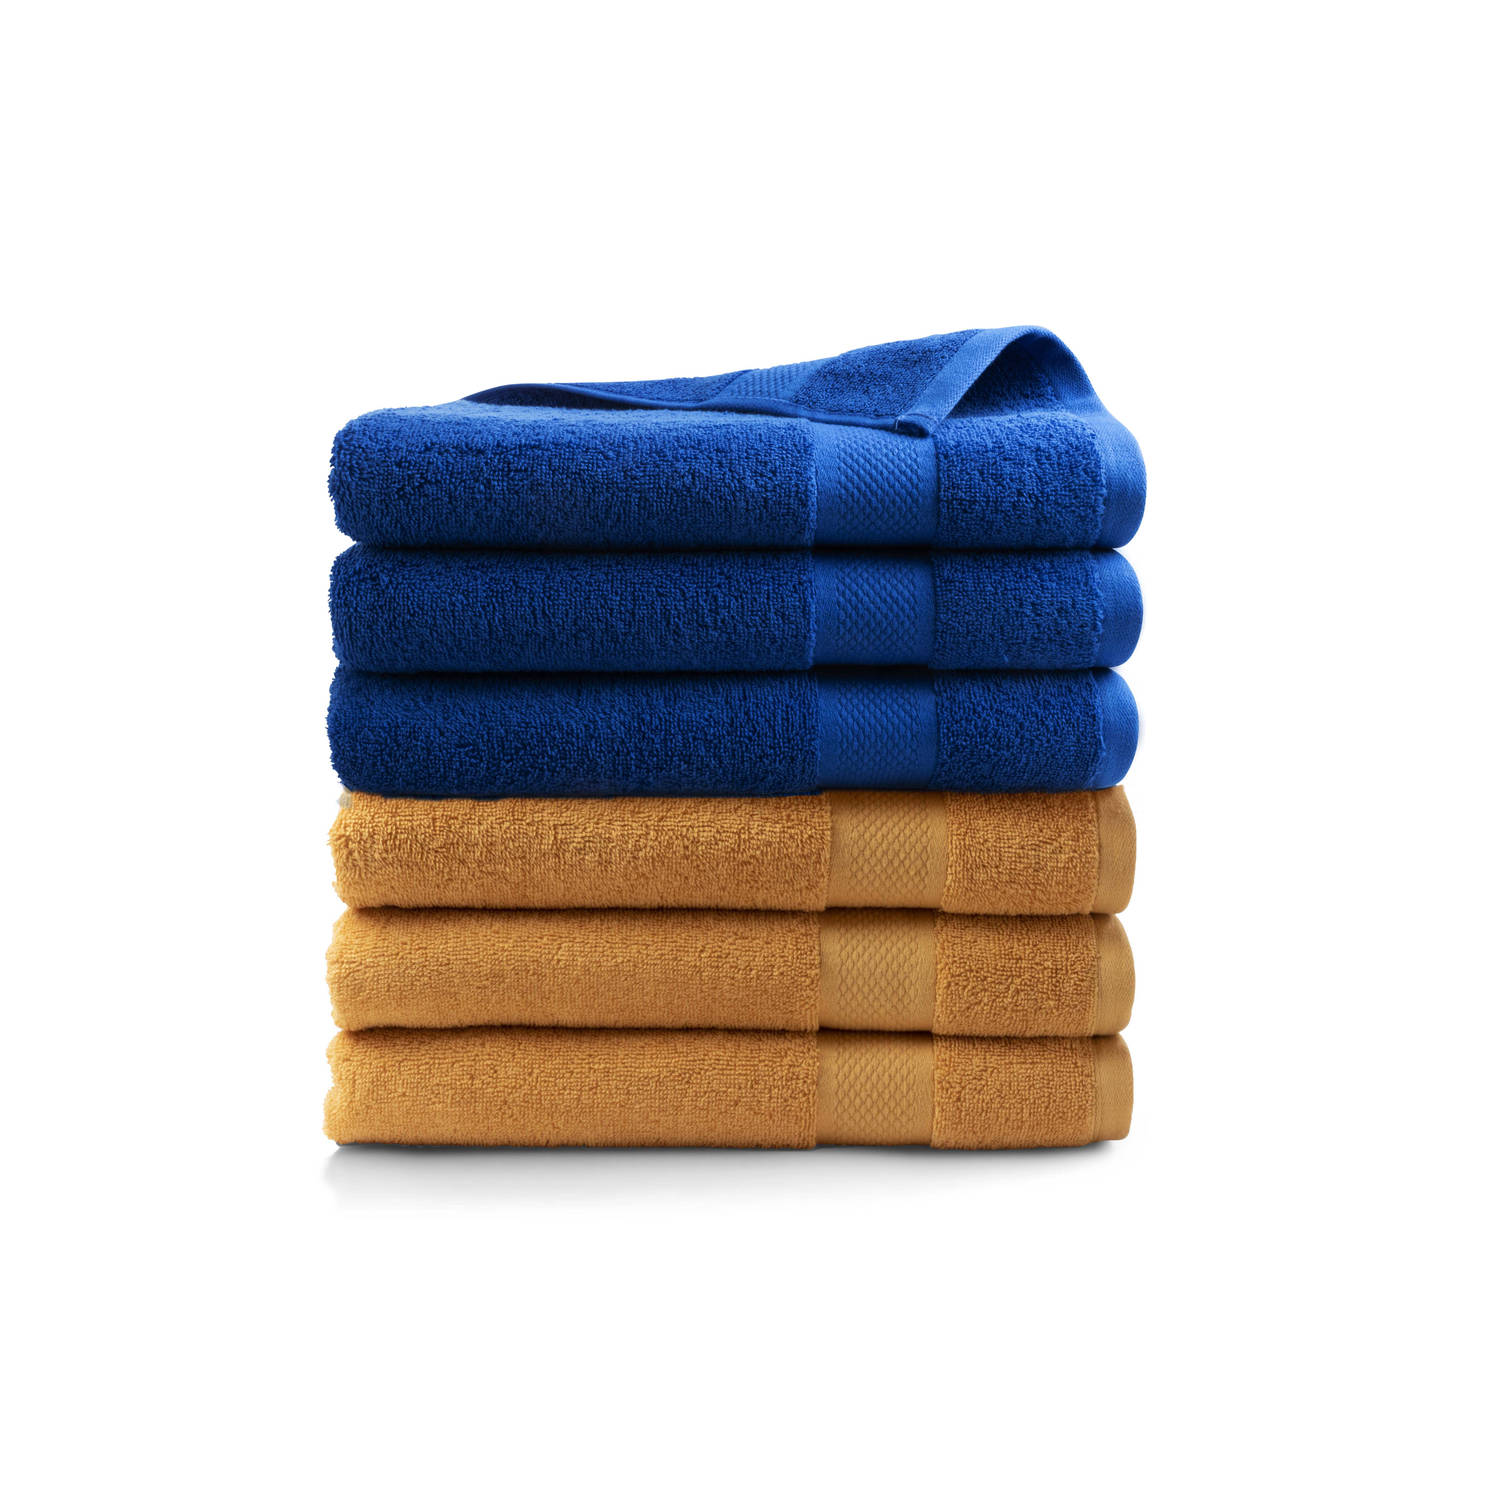 Handdoek Hotel Collectie - set van 6 stuks - 70x140 - 3x oker geel & 3x klassiek blauw